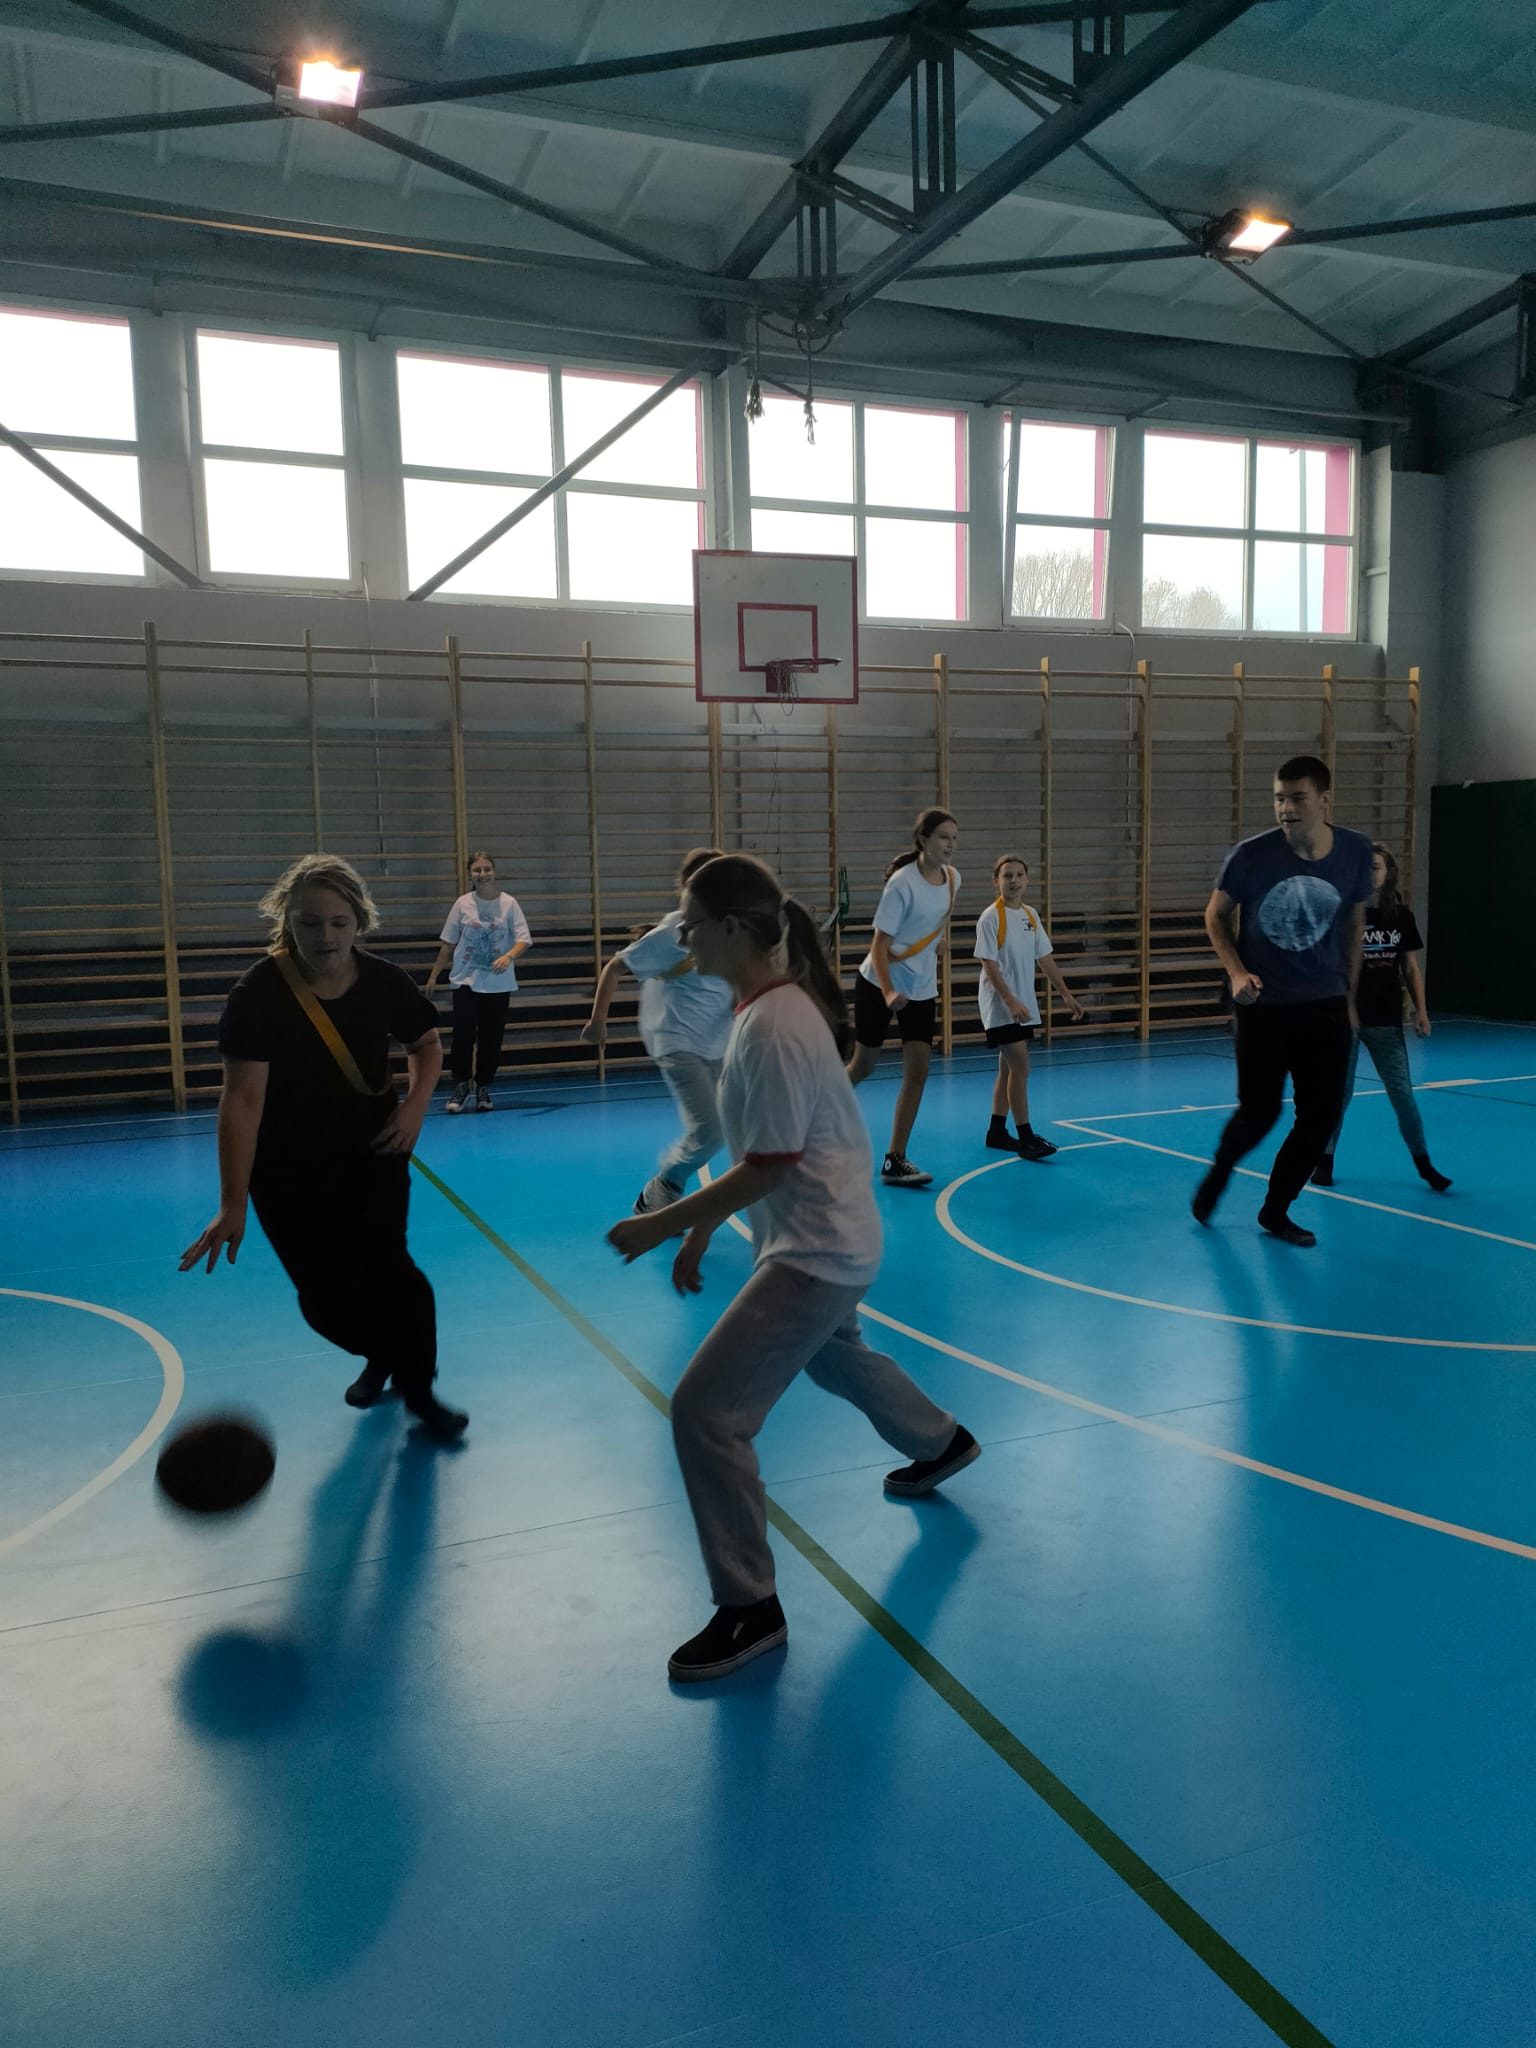 Zdjęcie wykonane w sali gimnastycznej, uczniowie w ruchu grają w piłkę koszykową